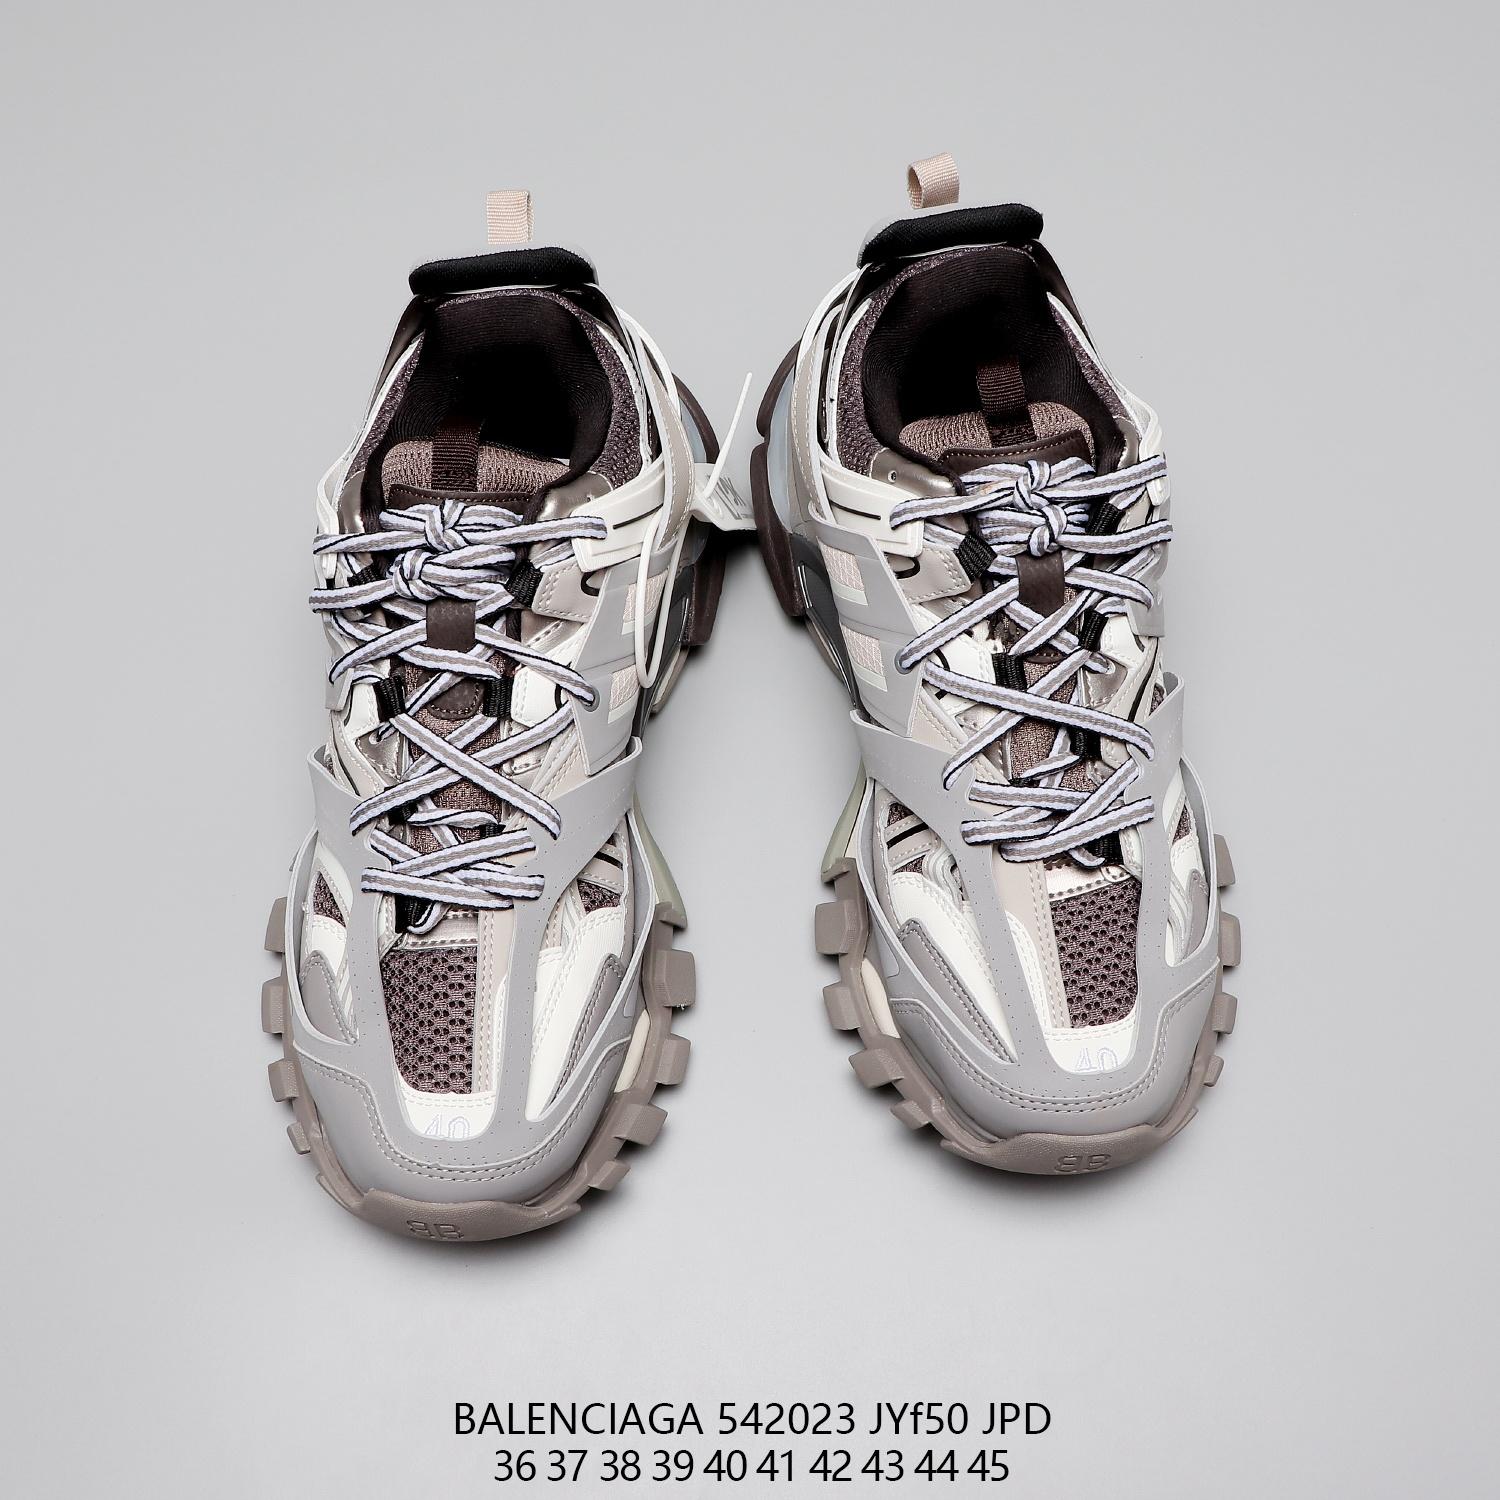 Balenciaga Track 2 Sneakers Mimma Ninni